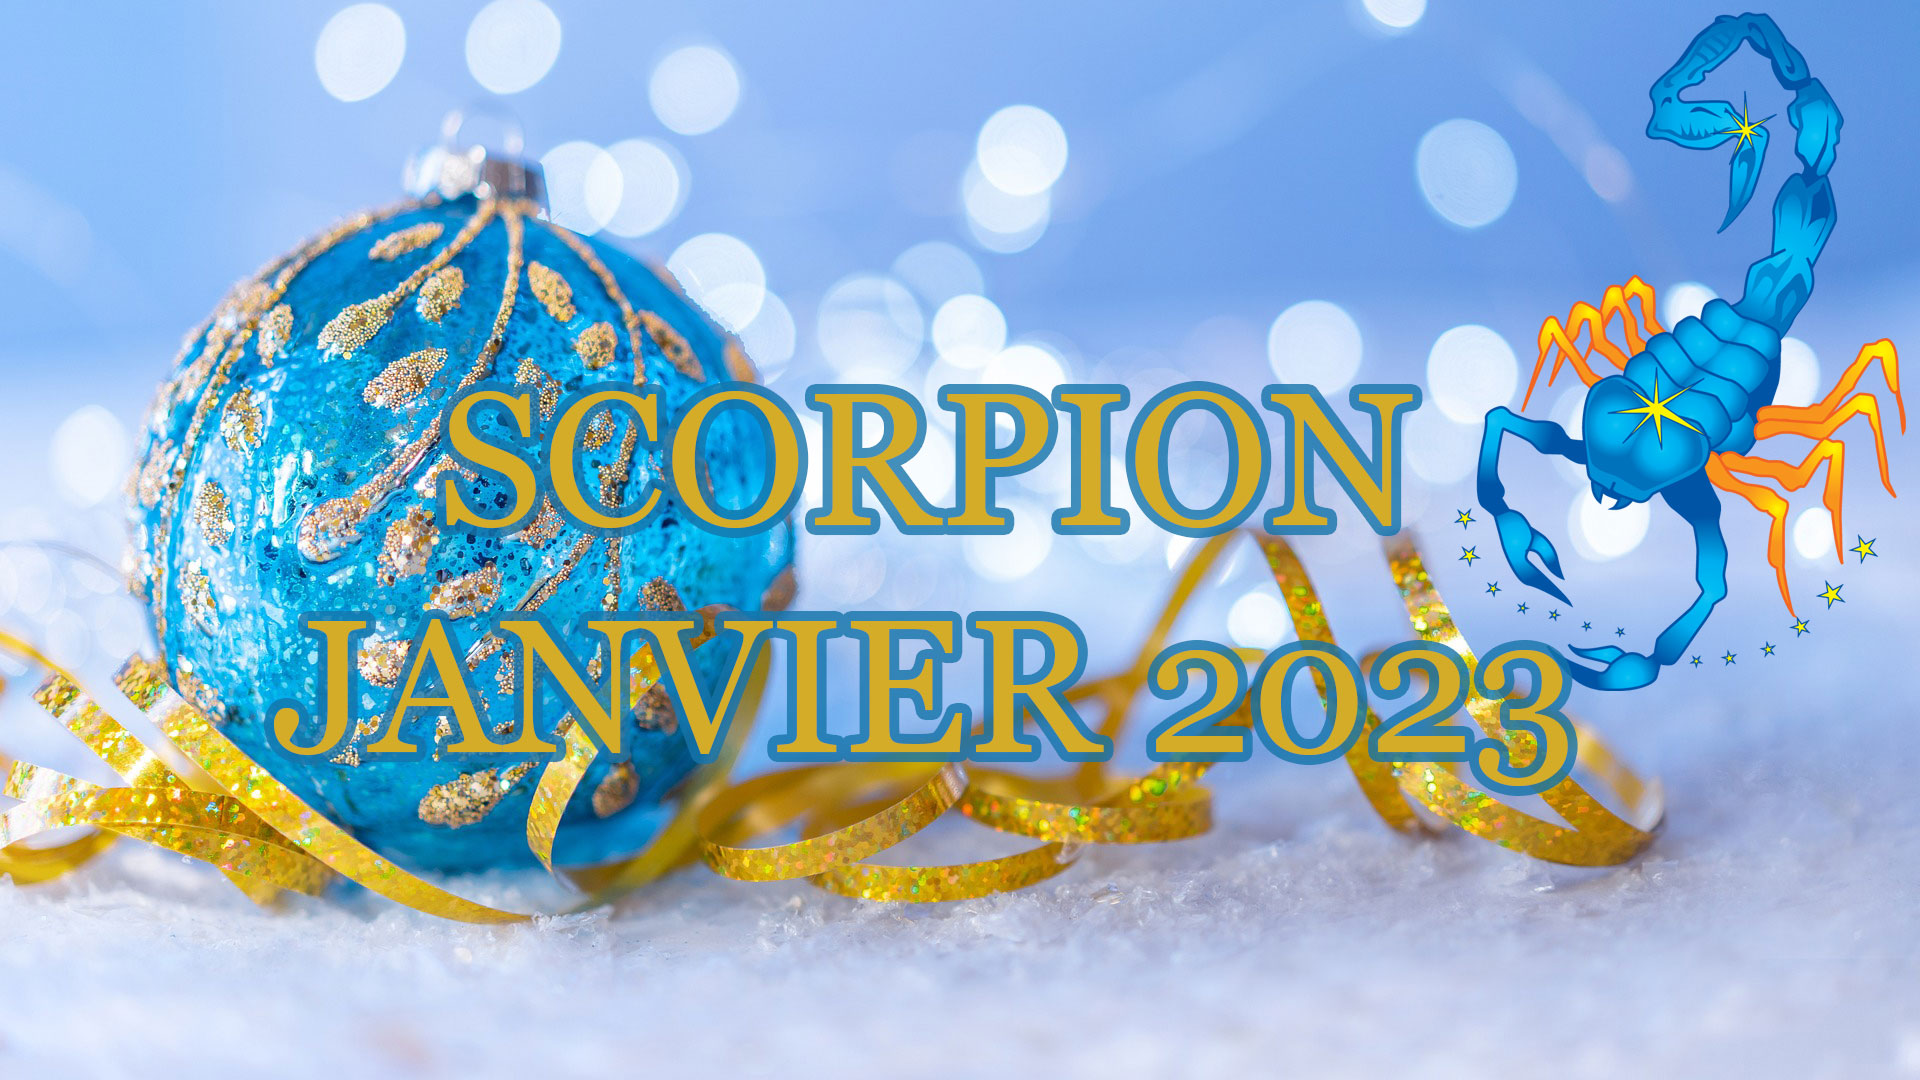 scorpion janvier 2023